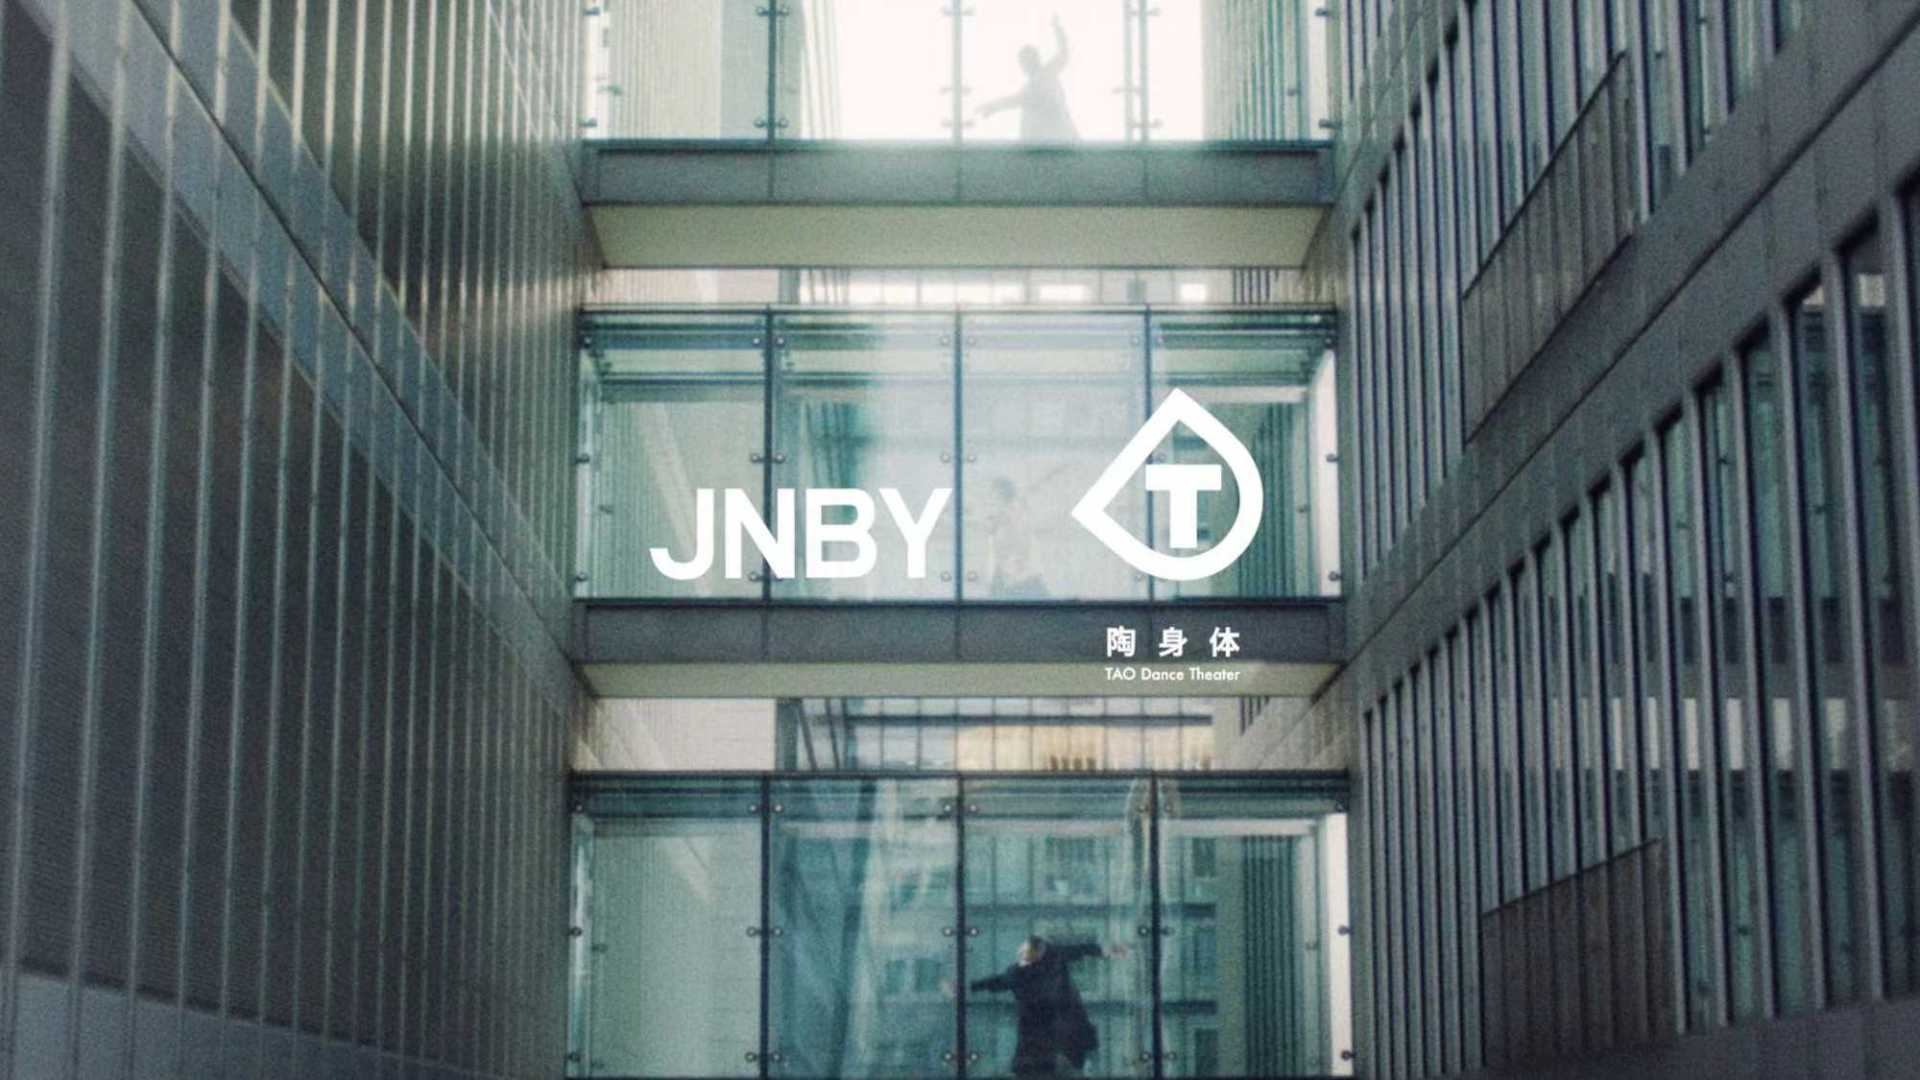 「片刻的旅行」 JNBY x 陶身体